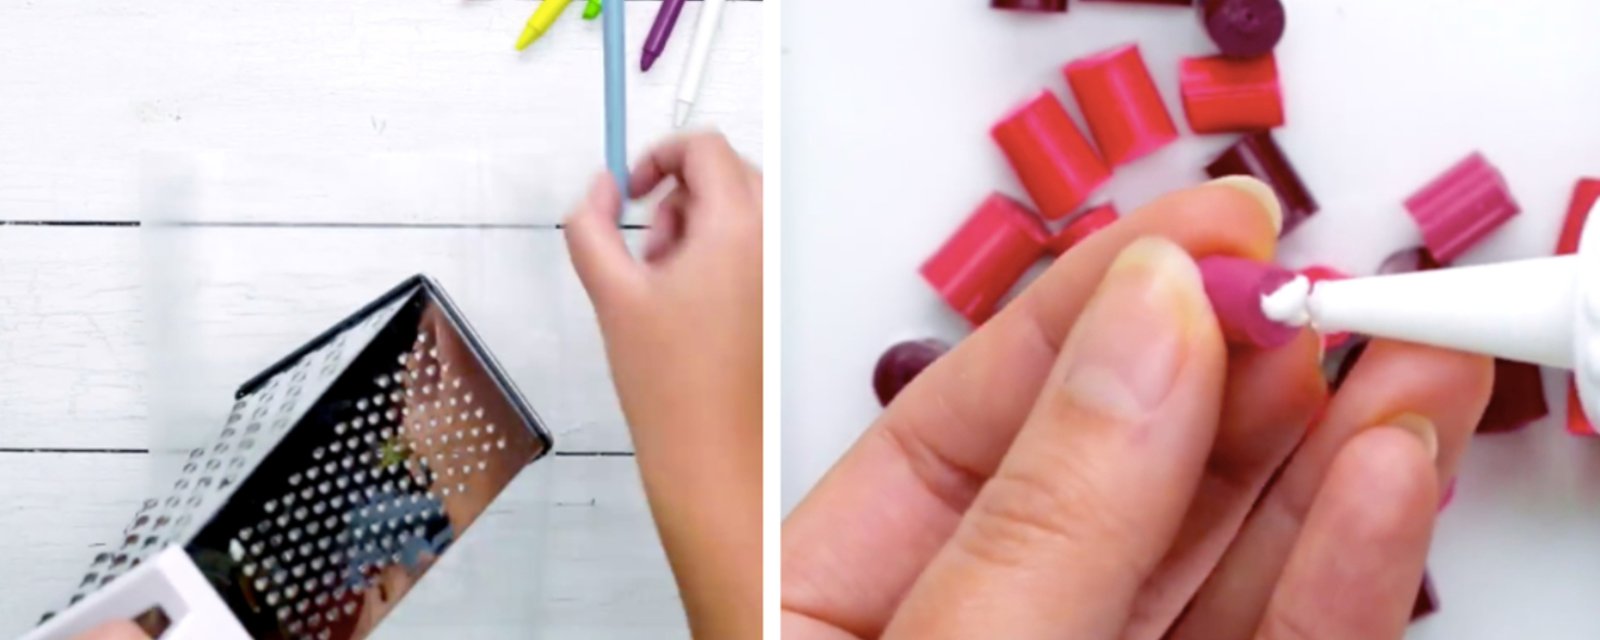 4 projets qui vous permettront de récupérer les crayons de cire brisés